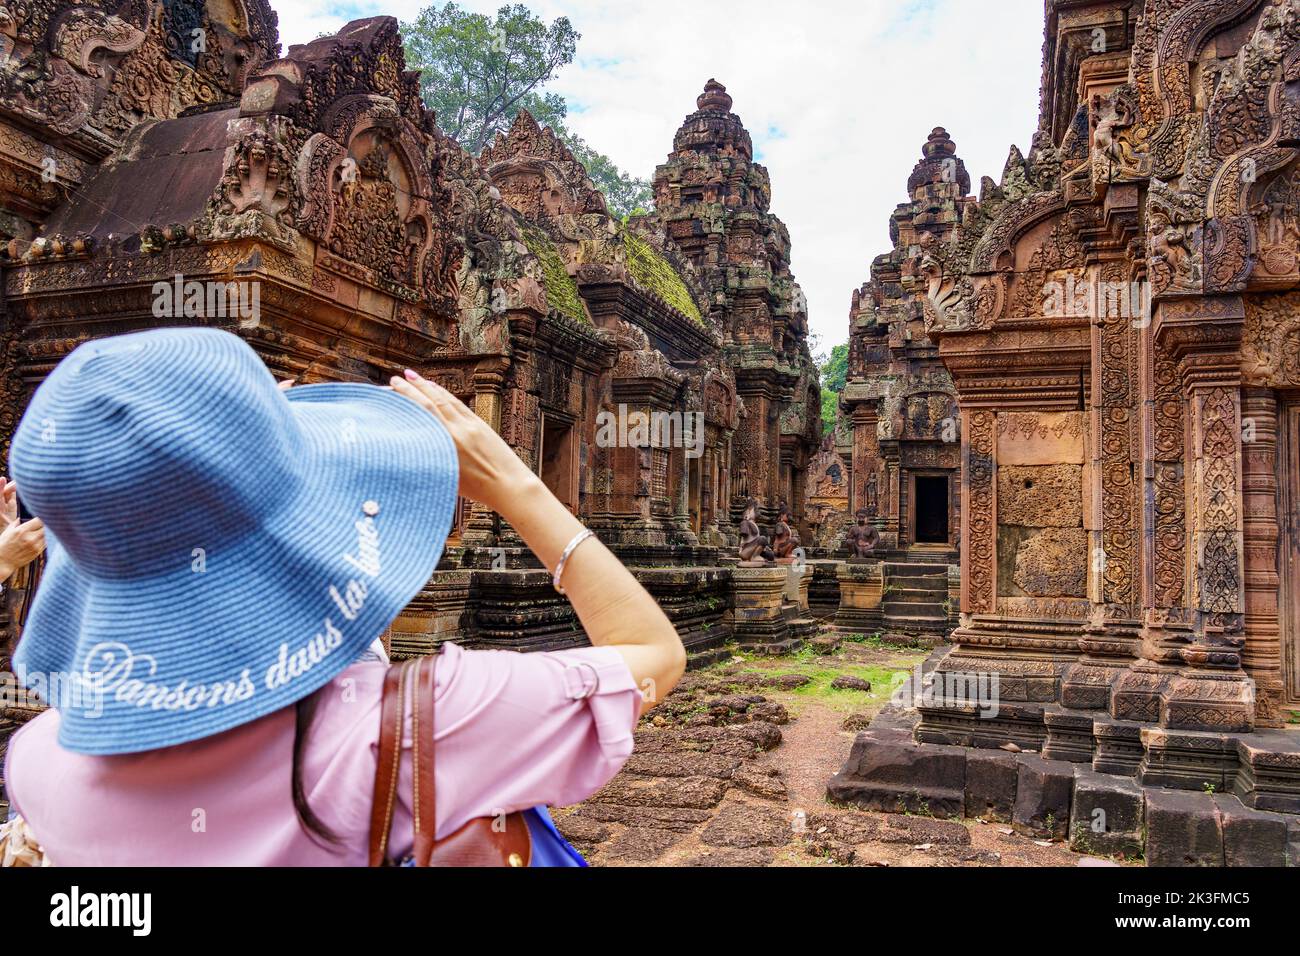 Camboya. Siem Riep. El parque arqueológico de Angkor. Una mujer fotografía el templo de Banteay Srei siglo 10th templo hindú dedicado a Shiva Foto de stock